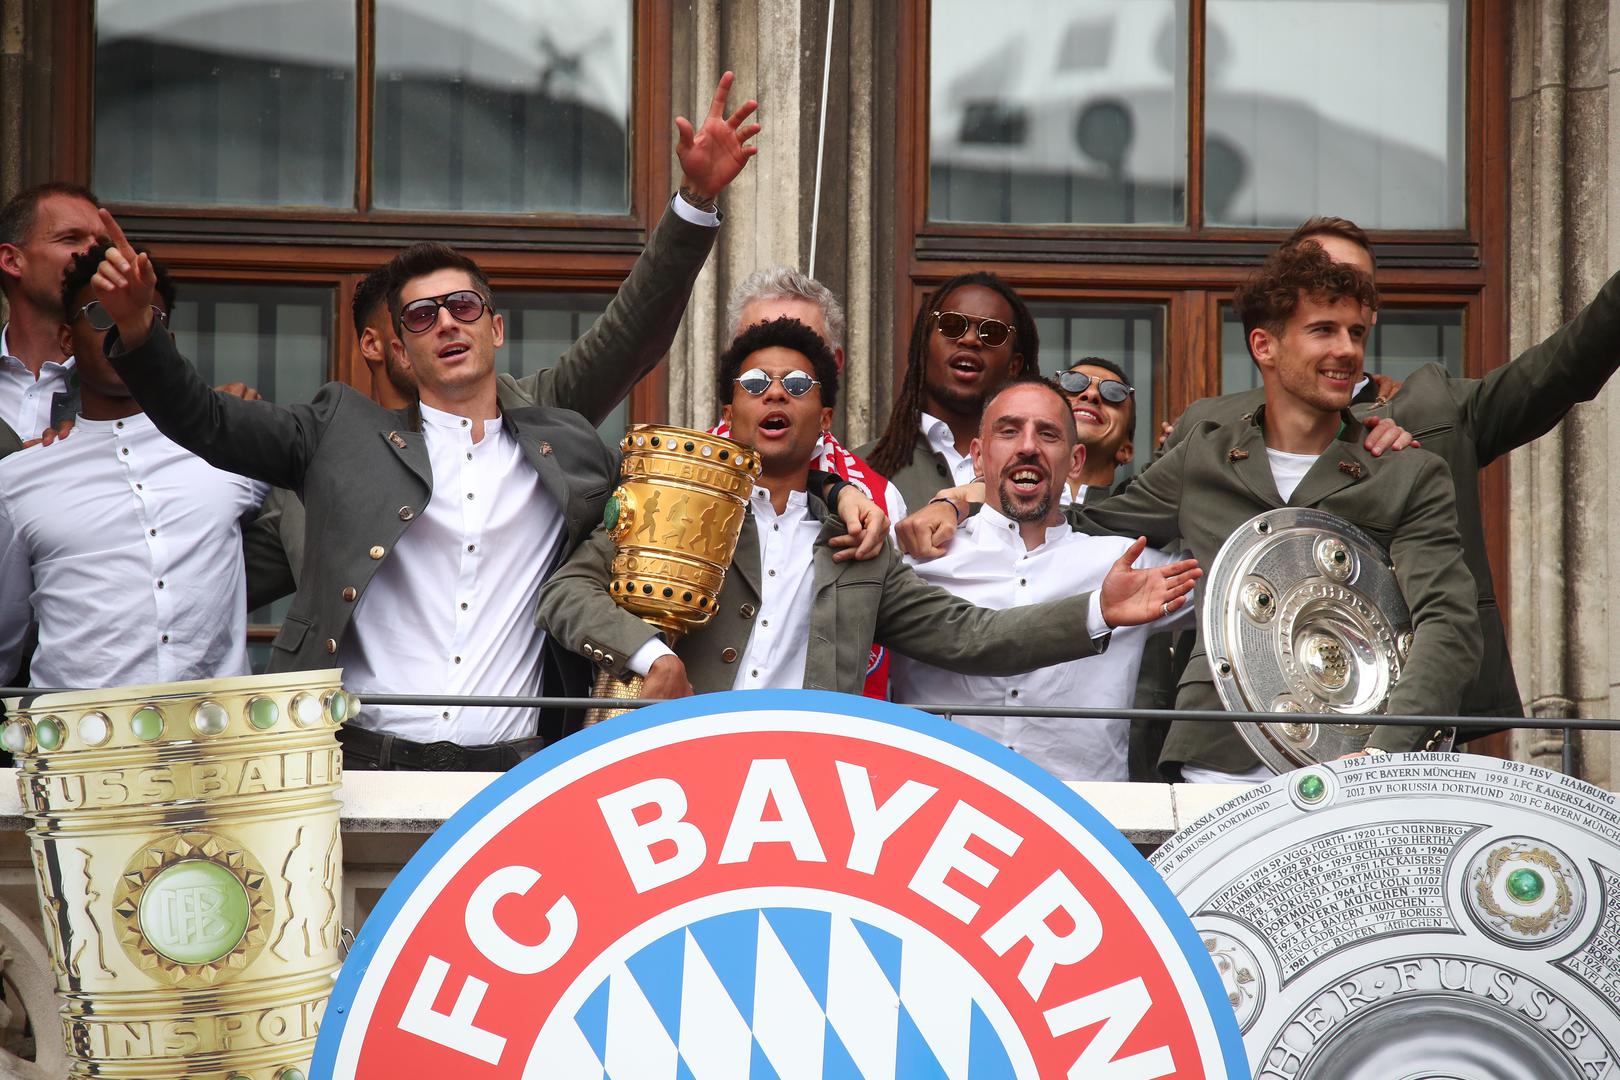 Proslavu su posebno emotivno doživjeli Franck Ribery i Arjen Robben, koji su odigrali posljednju utakmicu za Bayern